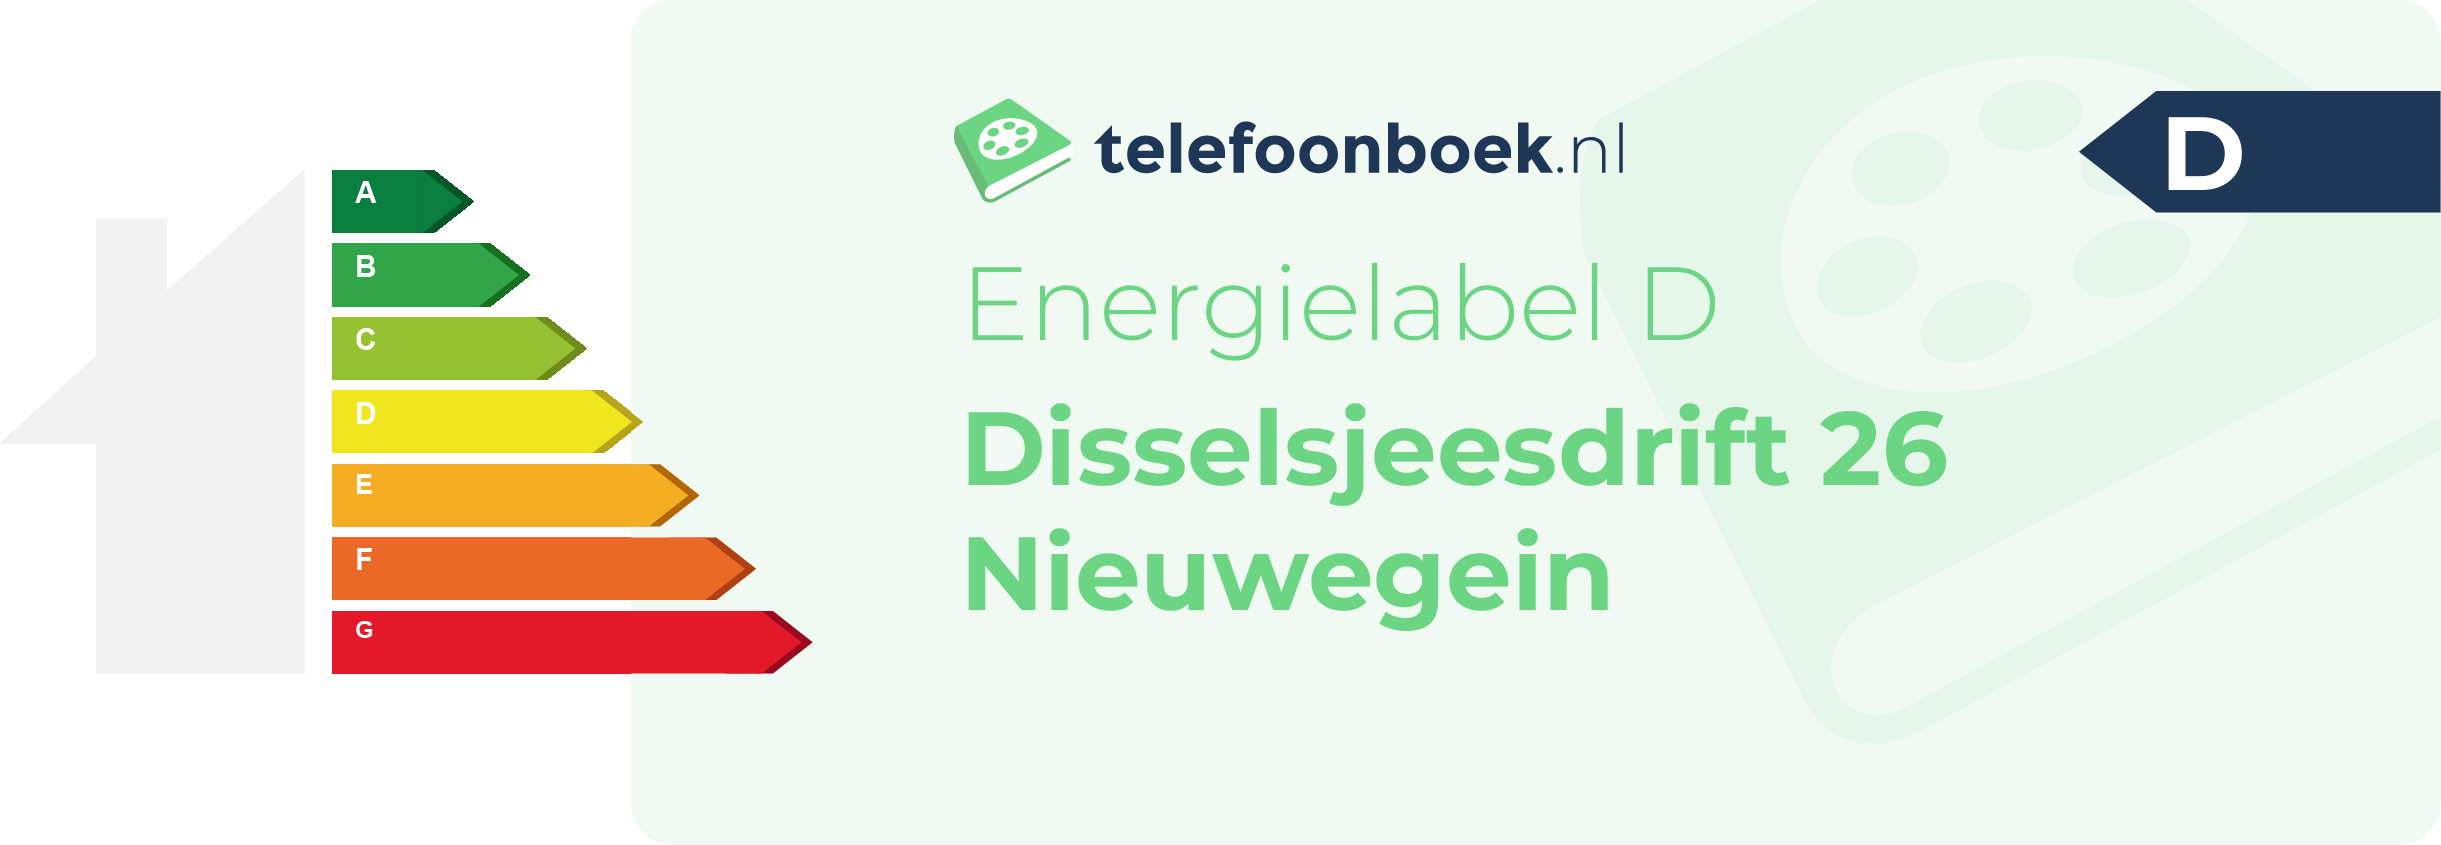 Energielabel Disselsjeesdrift 26 Nieuwegein